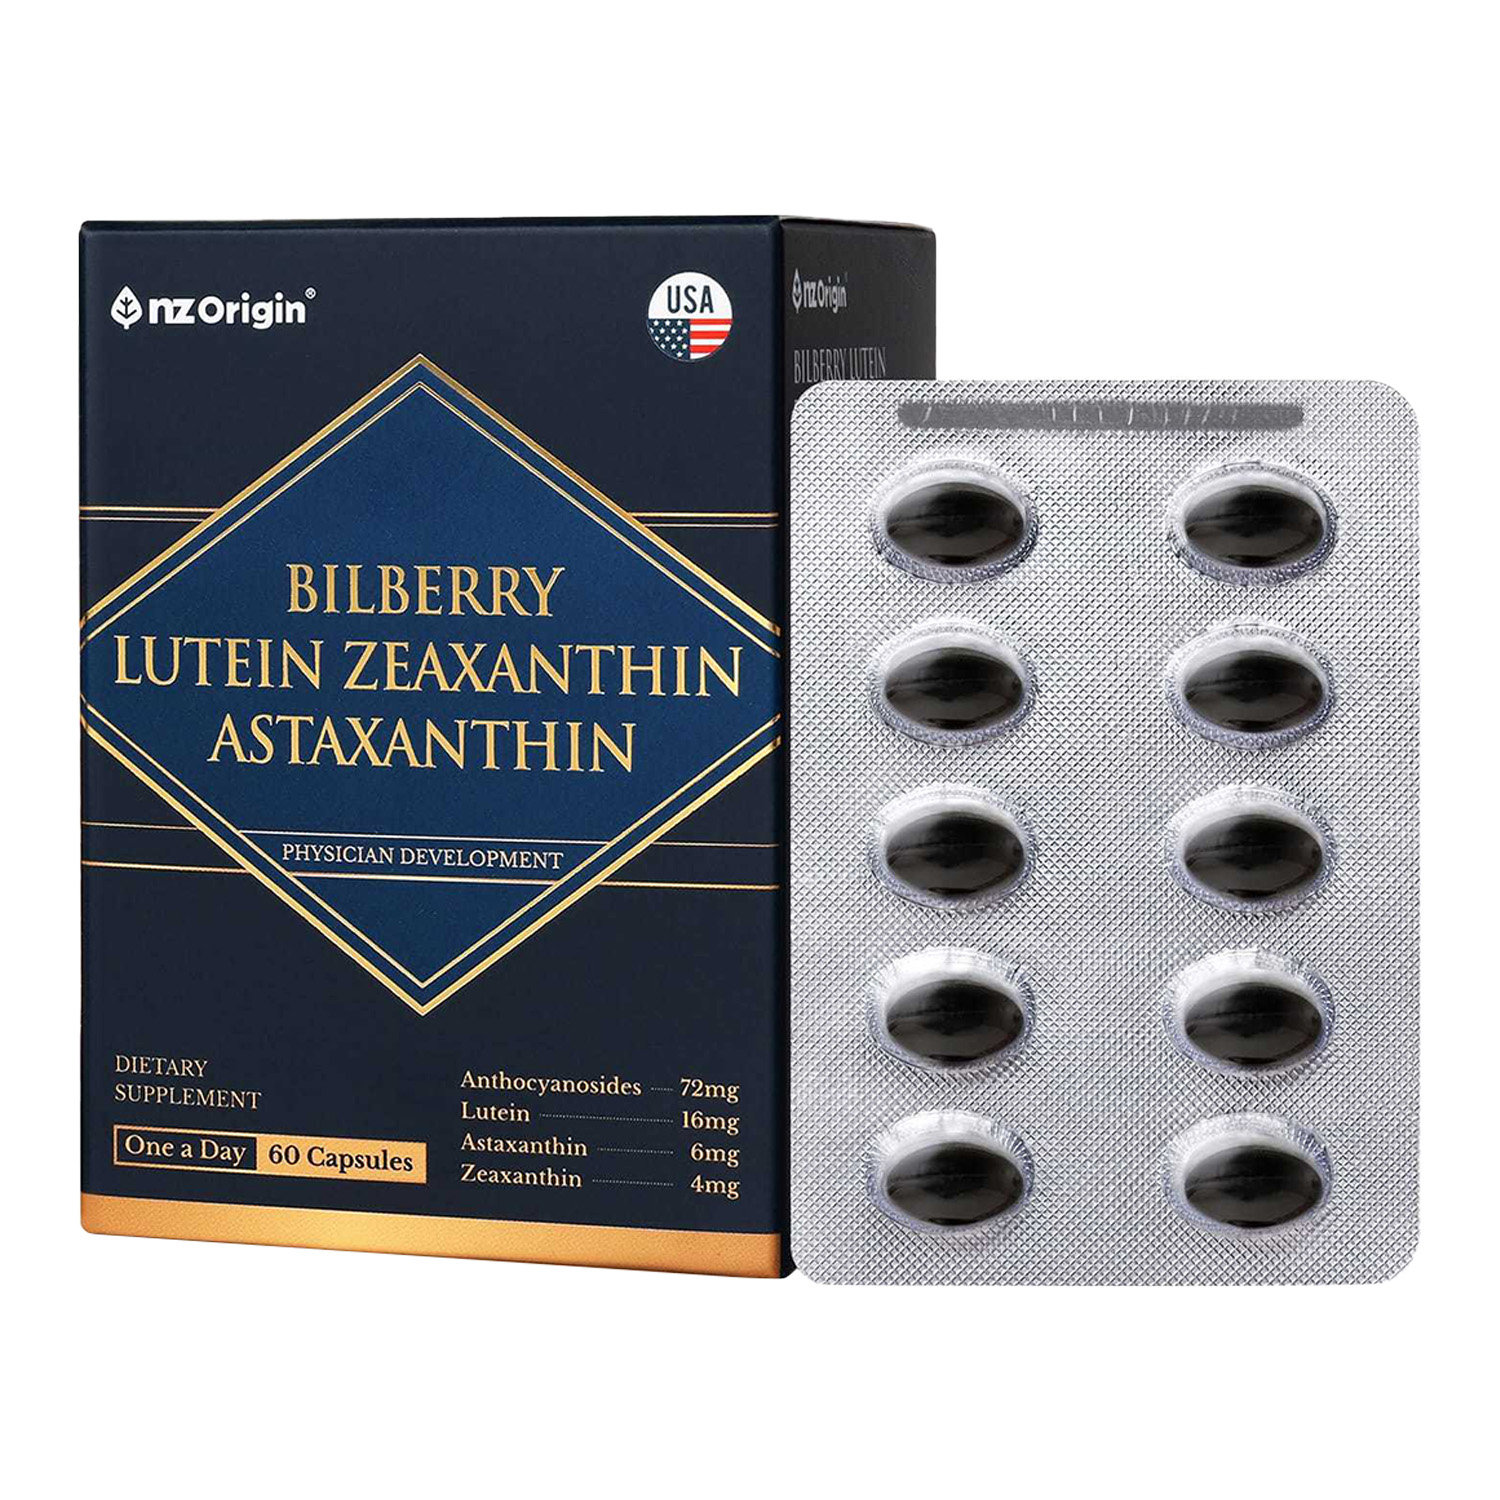 BILLBERRY LUTEIN ZEAXANTHIN ASTAXANTHIN (60 CAPSULES) / 2 MONTHS SUPPLY